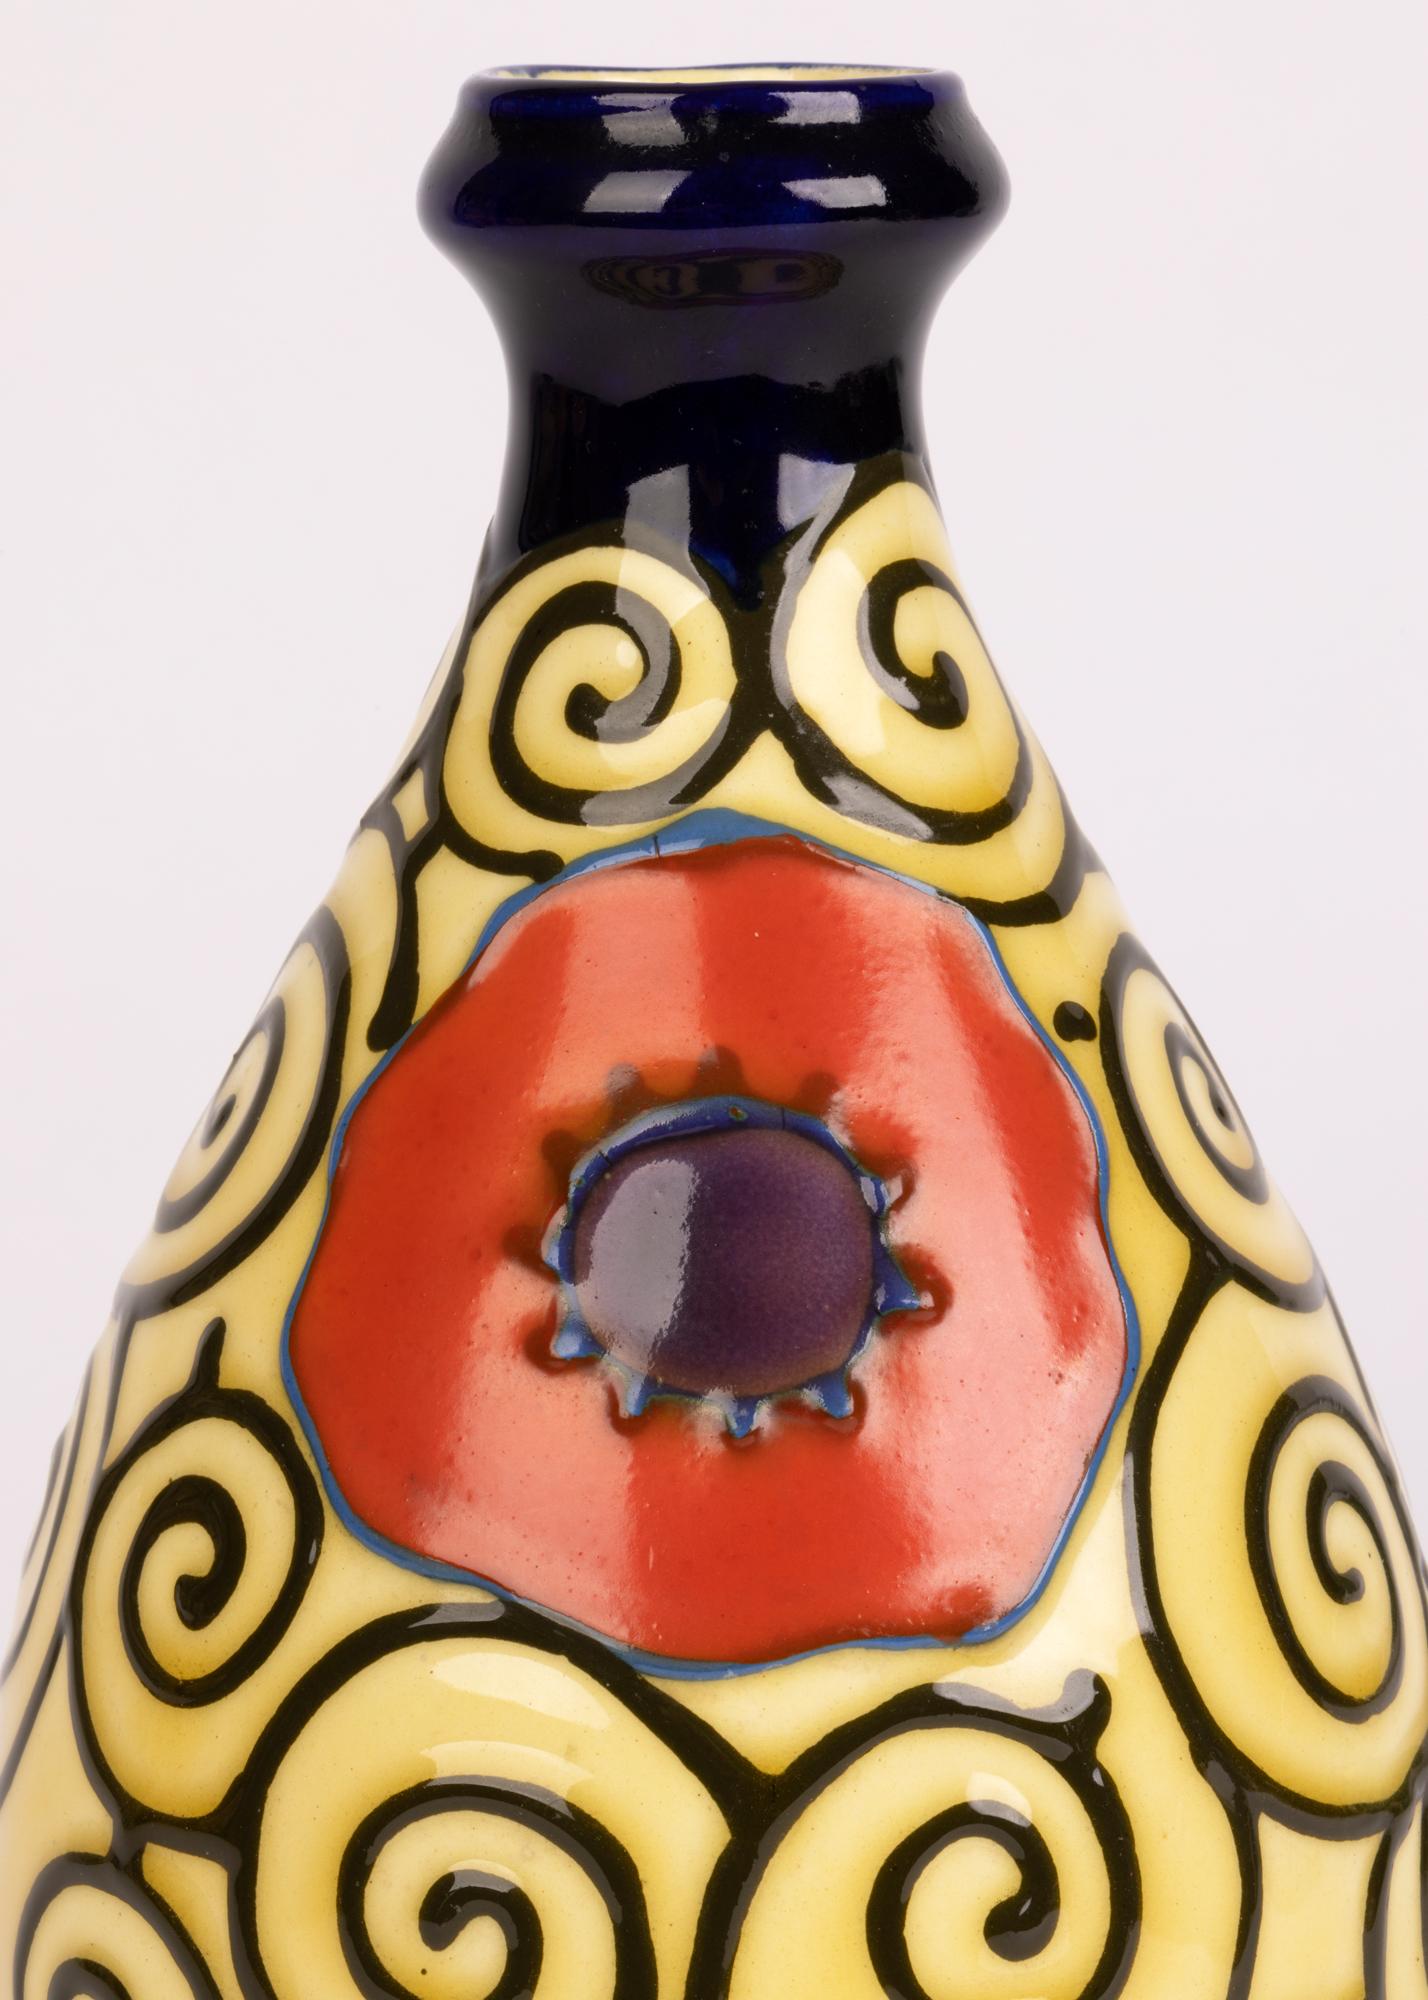 Un élégant vase en poterie d'art continentale, probablement autrichienne, Art déco, décoré de poppies serties dans un motif de volutes avec doublure de tubes. Le vase en forme de poire légèrement potée repose sur un étroit pied rond non émaillé avec